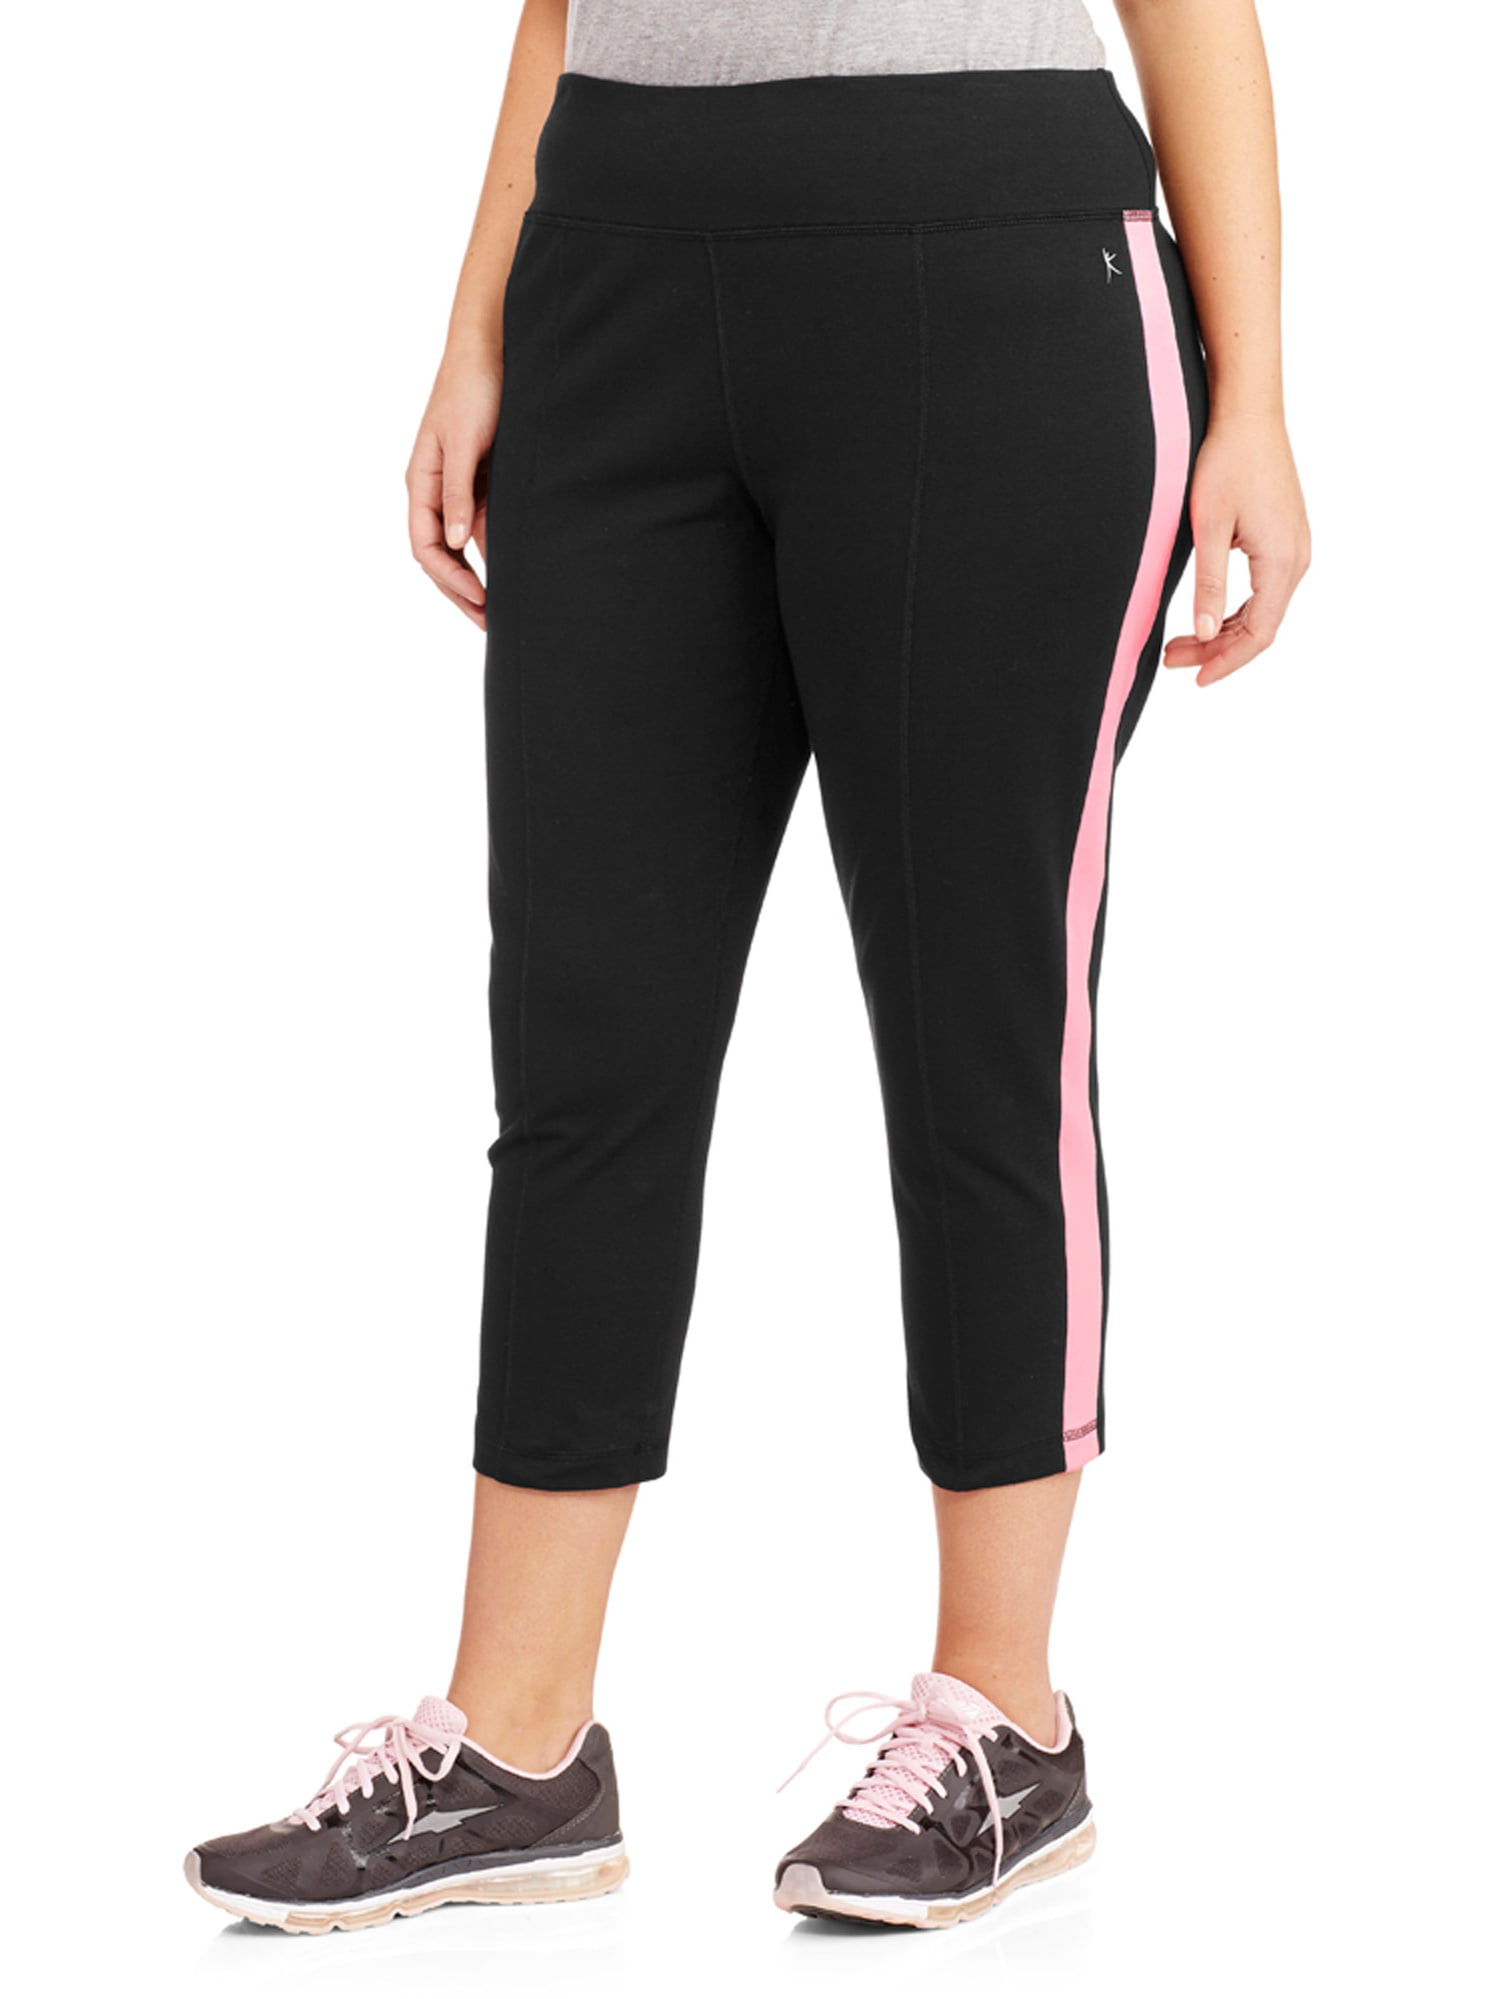 Danskin Now Women's Plus-Size Dri-More Capri Pants with Sporty Stripe 